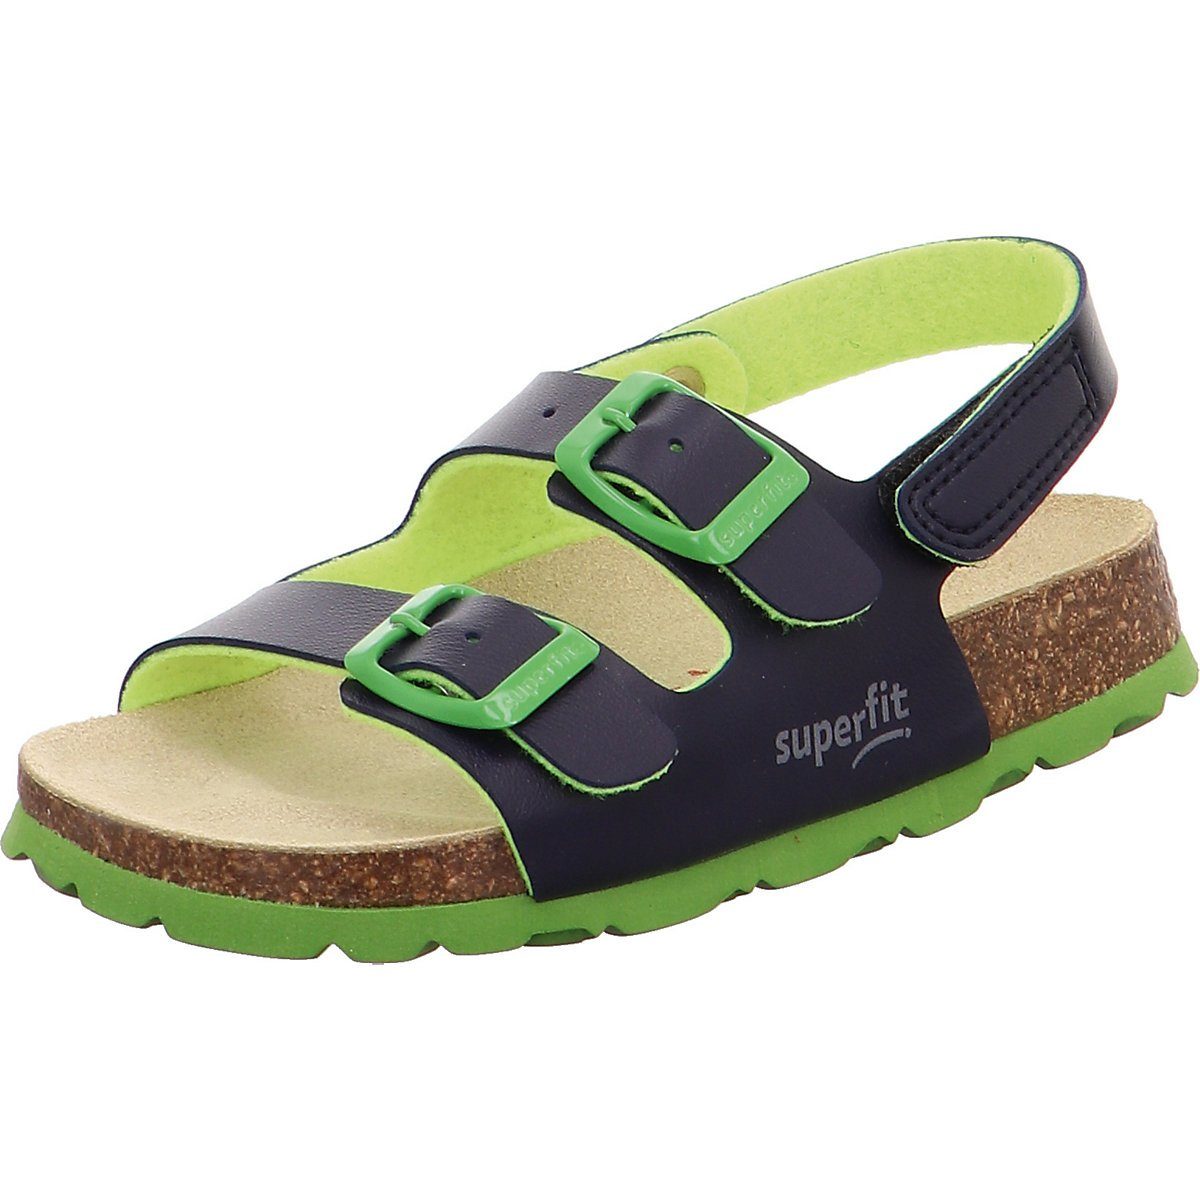 Superfit »Sandalen für Jungen« Sandale kaufen | OTTO